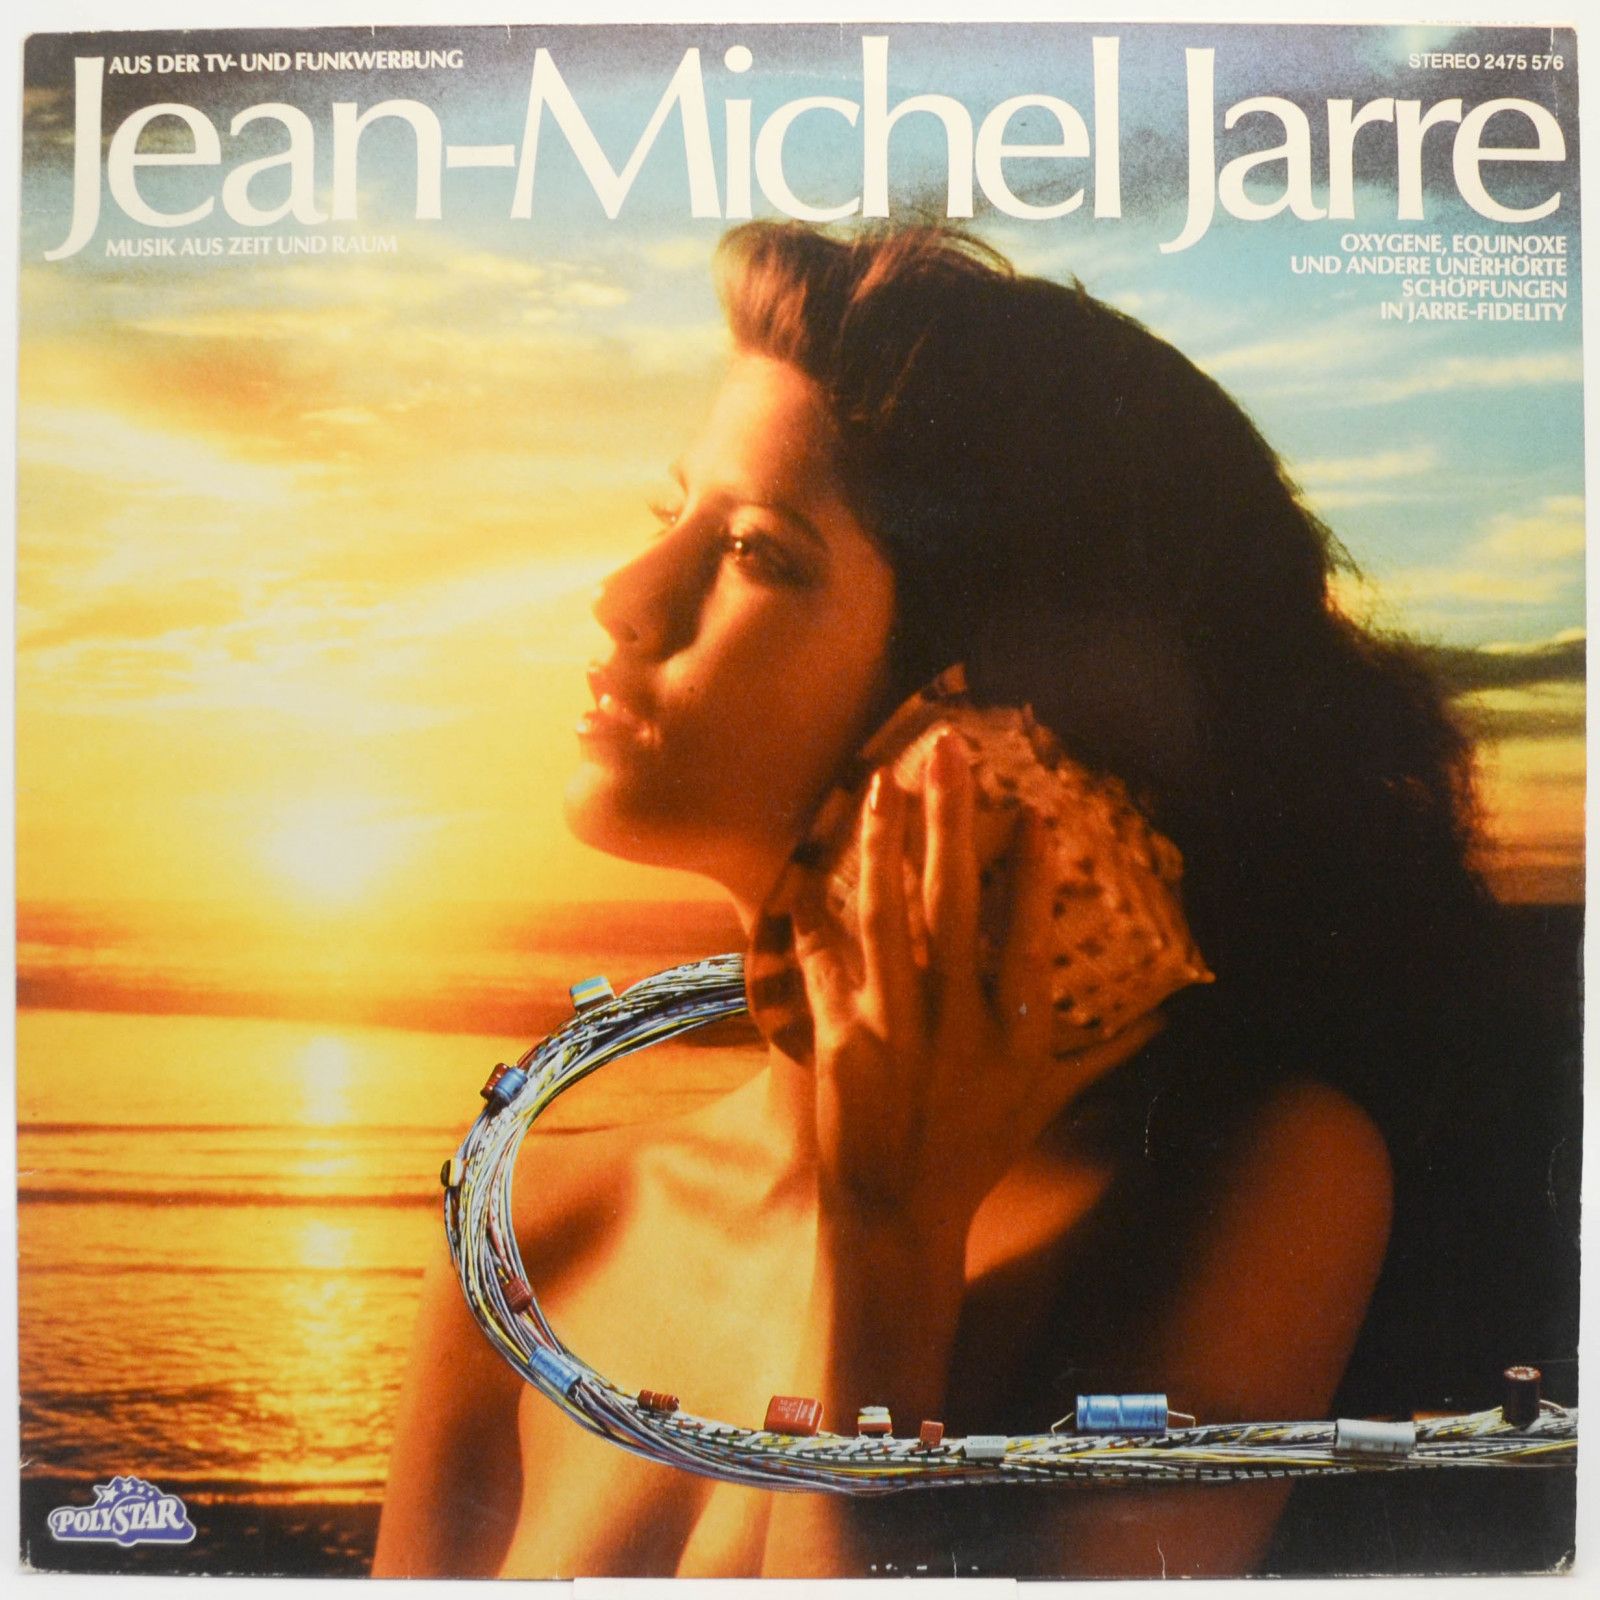 Jean-Michel Jarre — Musik Aus Zeit Und Raum, 1984